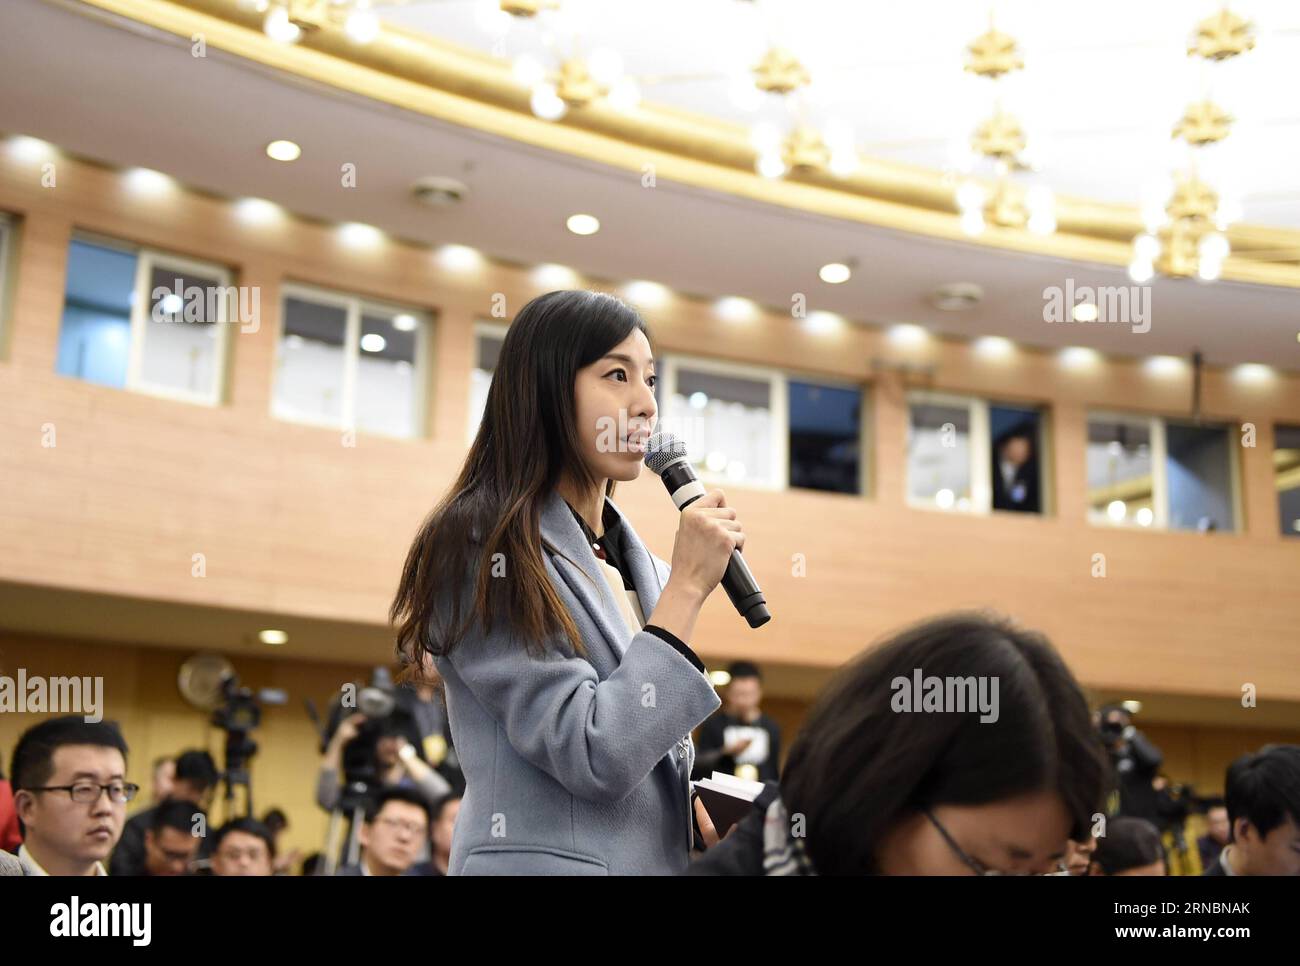 (160310) -- PEKING, 10. März 2016 -- Ein Journalist mit Qilu Evening News stellt Fragen während einer Pressekonferenz über den Fortschritt der Gesetzgebung am Rande der vierten Sitzung des 12. Nationalen Volkskongresses Chinas in Peking, der Hauptstadt Chinas, am 10. März 2016. )(mcg) (ZWEI SITZUNGEN)CHINA-BEIJING-NPC-PRESS CONFERENCE-LEGISLATION (CN) ChenxYichen PUBLICATIONxNOTxINxCHN 160310 Peking 10. März 2016 ein Journalist mit Qilu Evening News stellt während einer Pressekonferenz Fragen über den Fortschritt der Gesetzgebung AN der Seite der vierten Sitzung des 12. Chinesischen Nationalkongresses der Prominenten Stockfoto